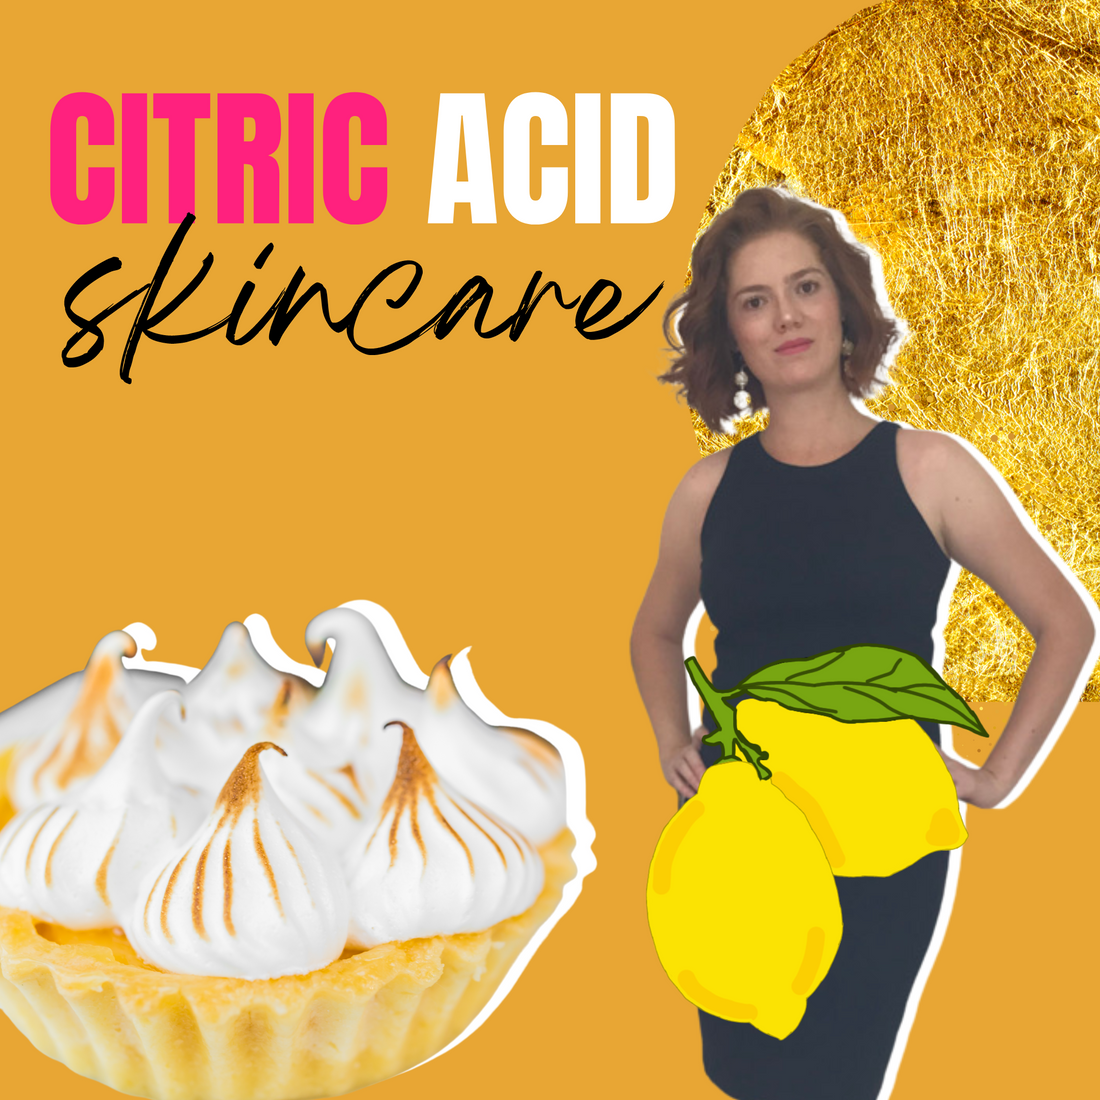 Citric acid in skin care | AHA acids 101